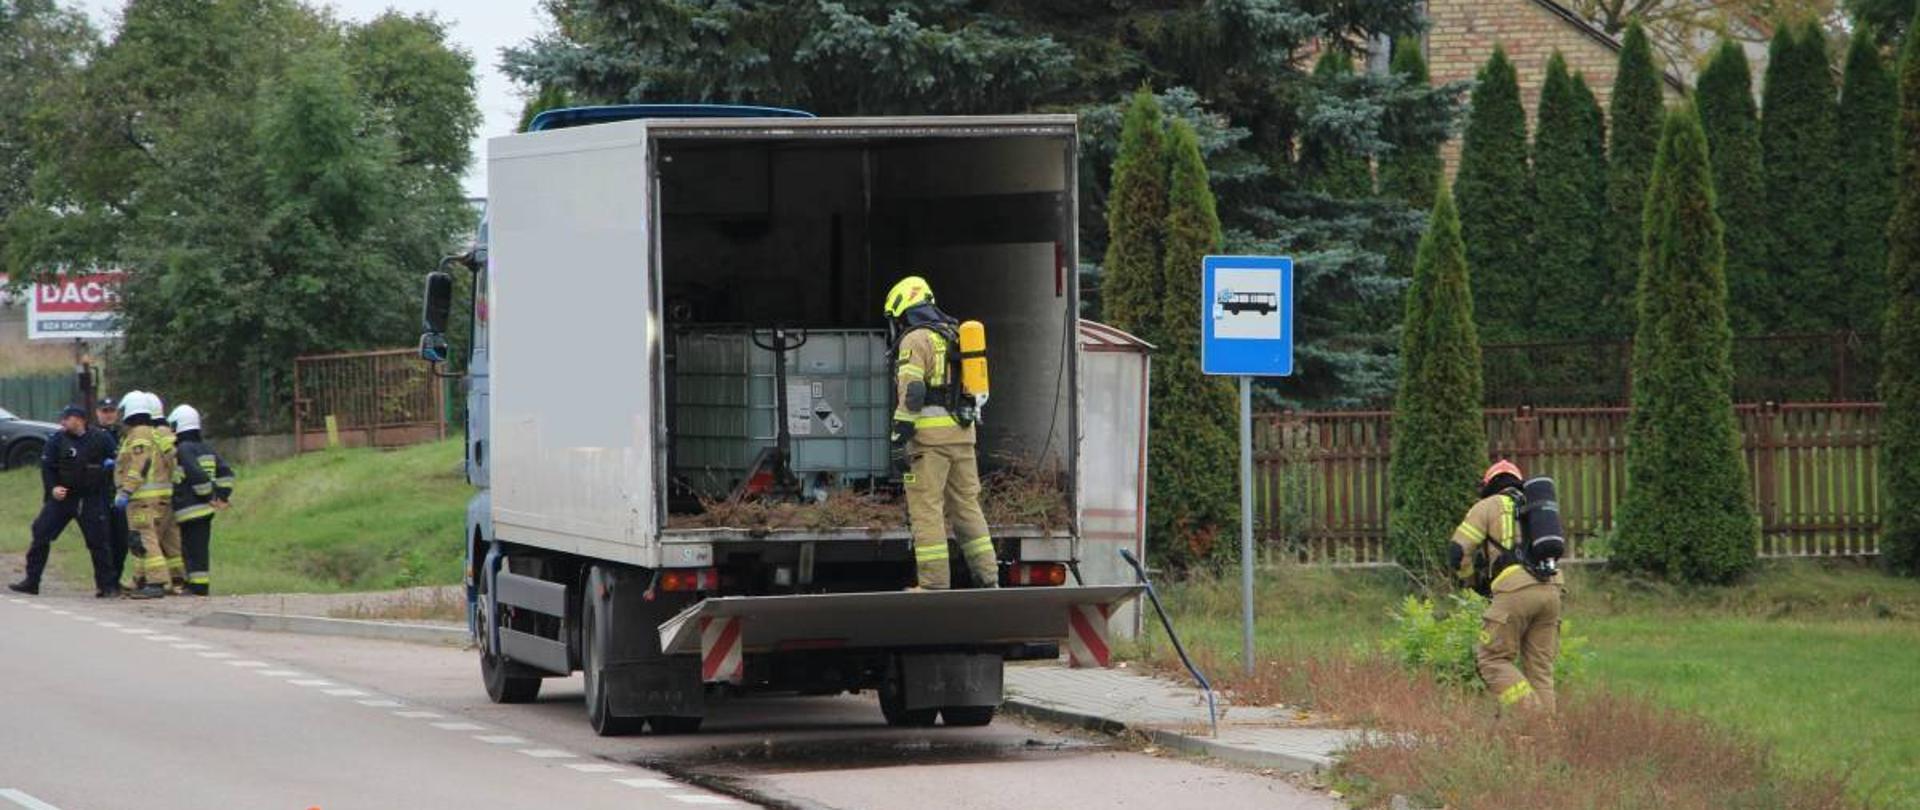 strażacy neutralizujący wyciek żrącej substancji z samochodu ciężarowego stojącego na poboczu DK 63